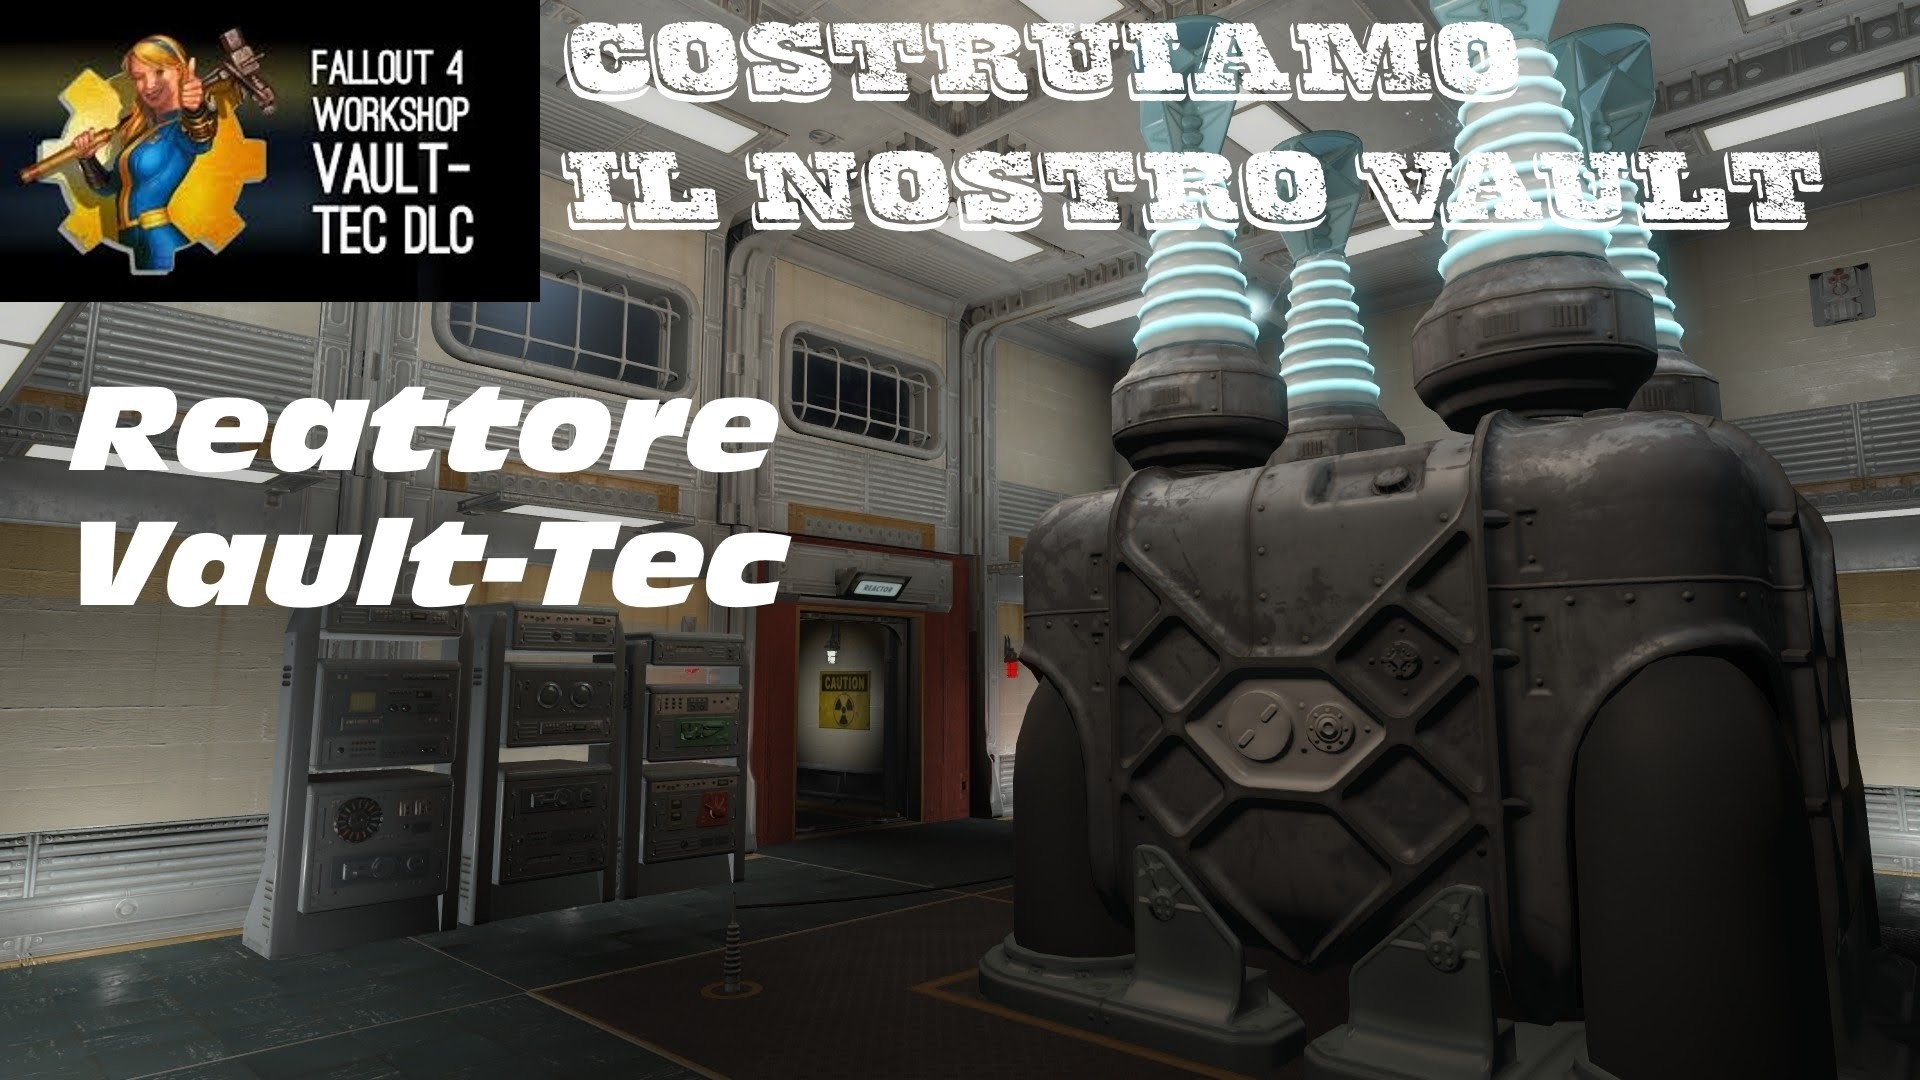 1920x1080 Fallout 4 - Vault-Tec Workshop - Vault 88: "Costruiamo il nostro vault" -  Reattore - [Tutorial ITA]